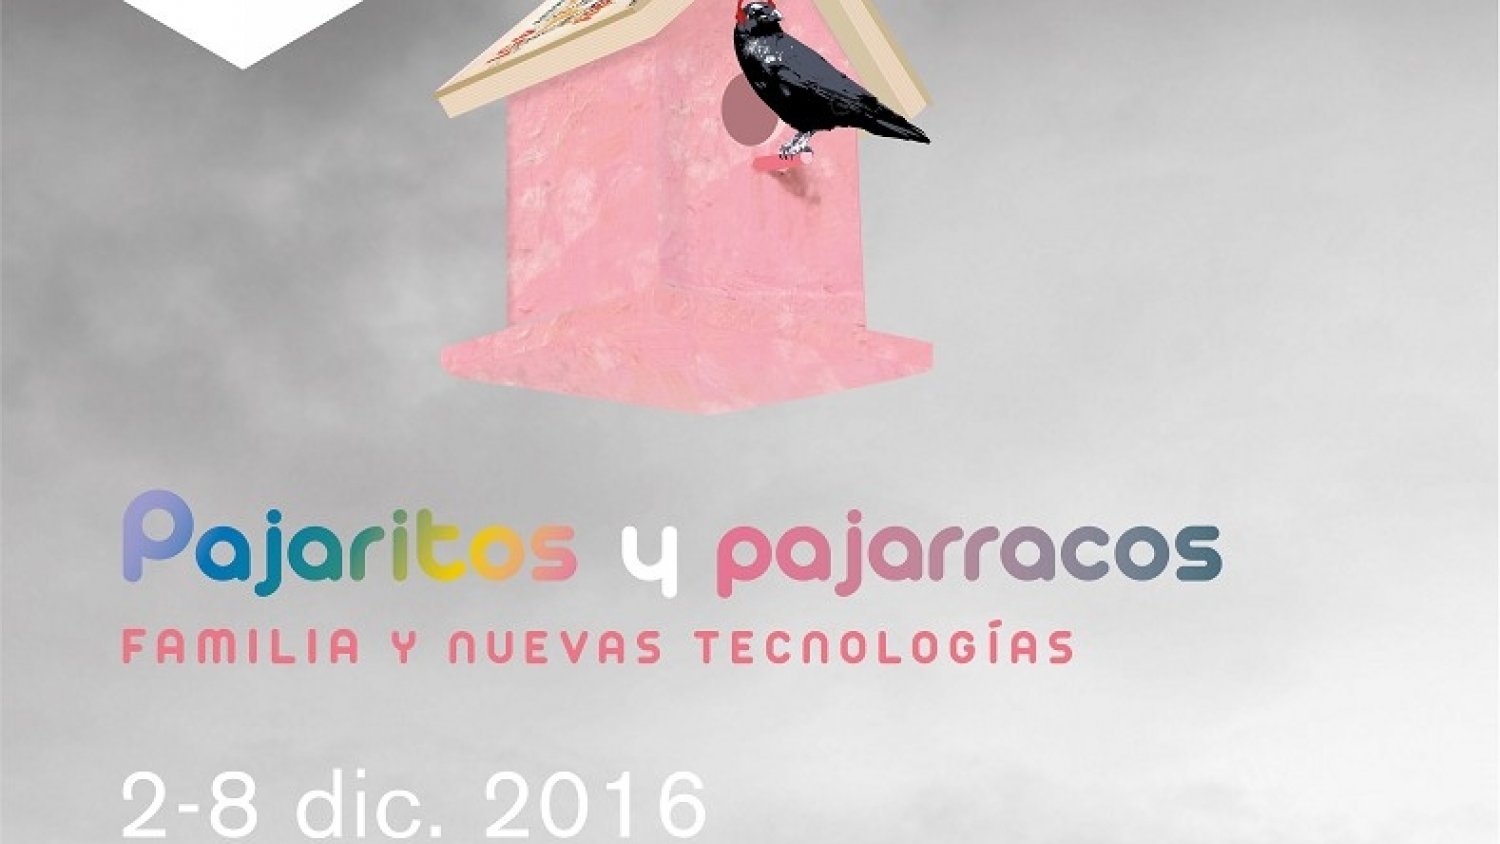 El festival infantil ‘Pajaritos y pajarracos’ invita a las familias a afrontar el desafío digital a través de talleres, conciertos y obras de teatro